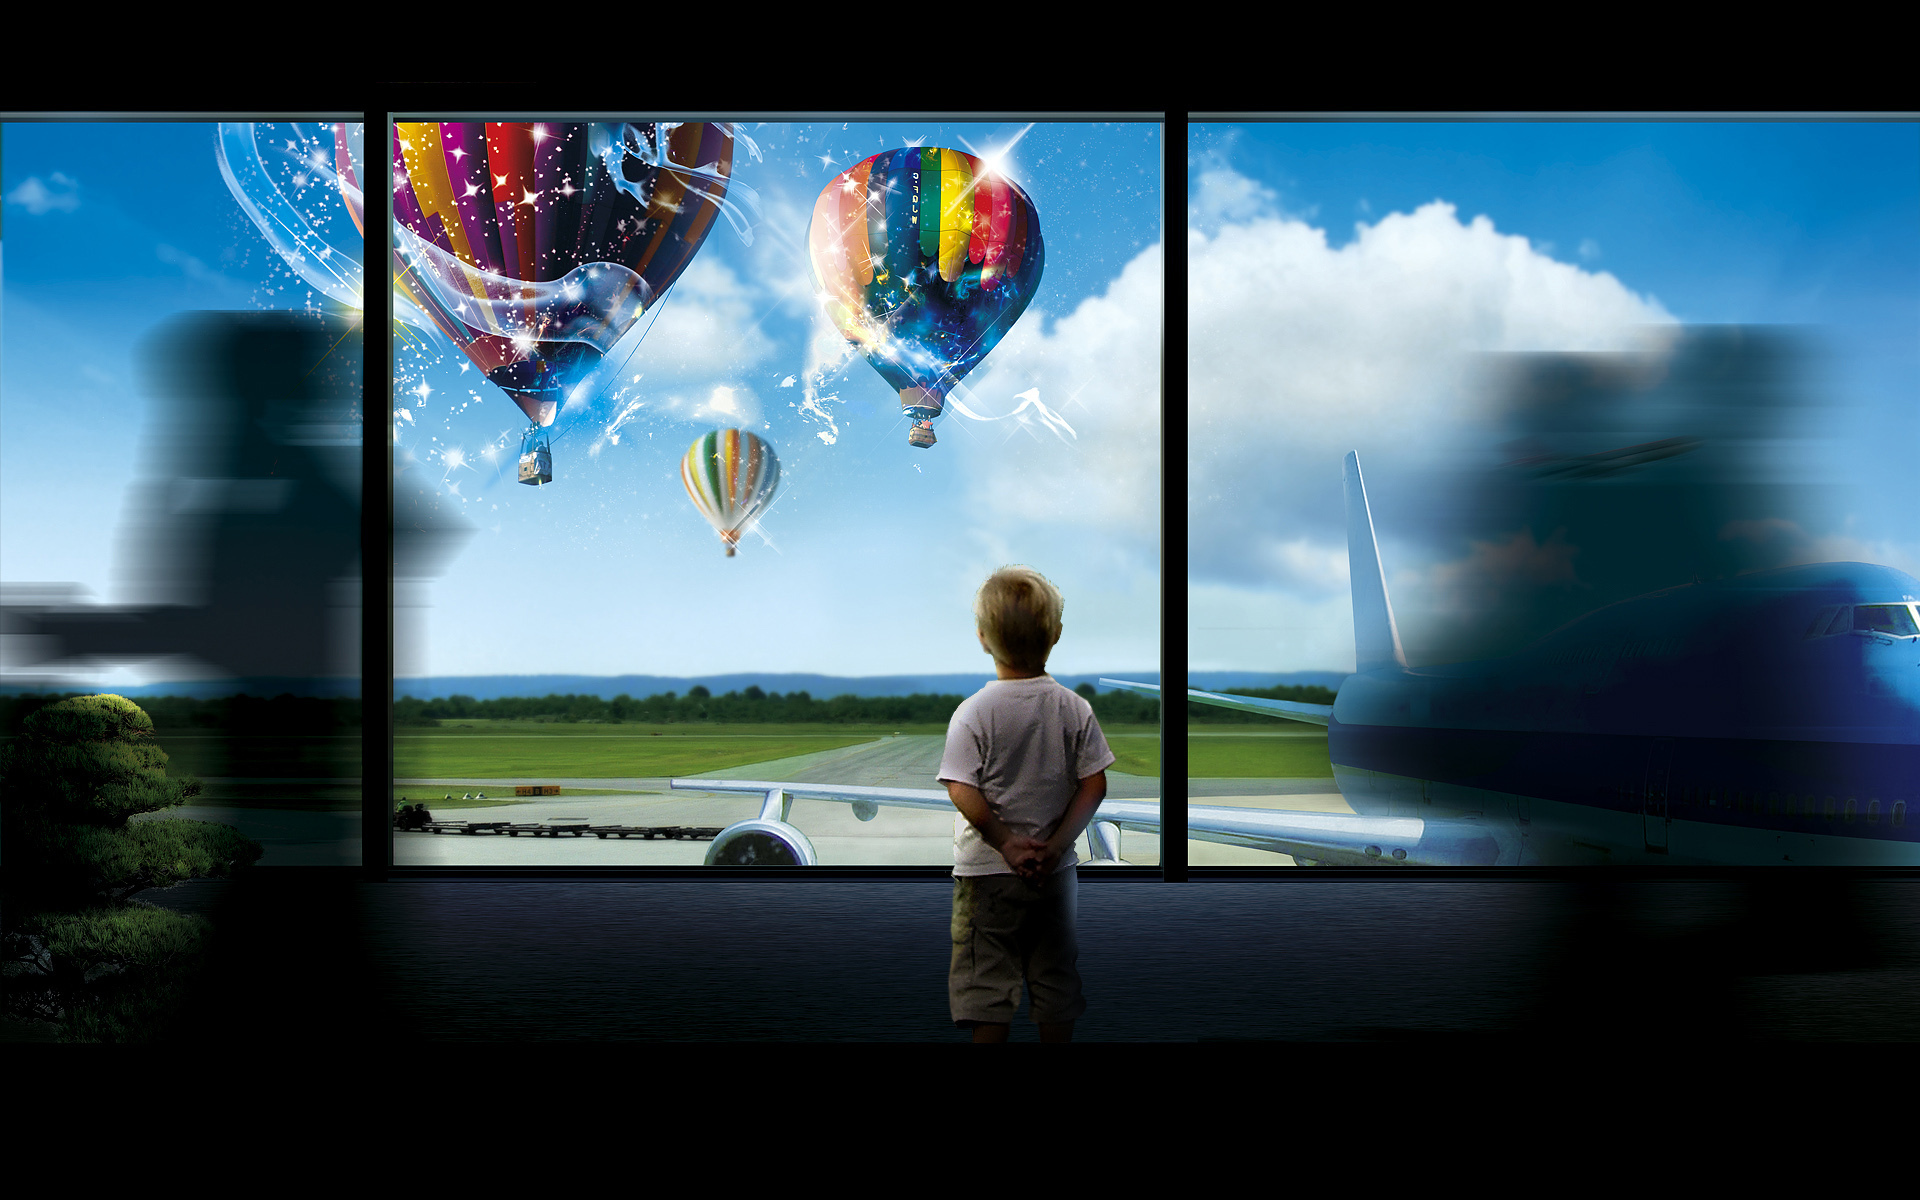 3d обои Мальчик стоит посреди кишащего людьми аэропорта и смотрит в окно, где поднимаются в воздух волшебные воздушные шары  ретушь # 76256